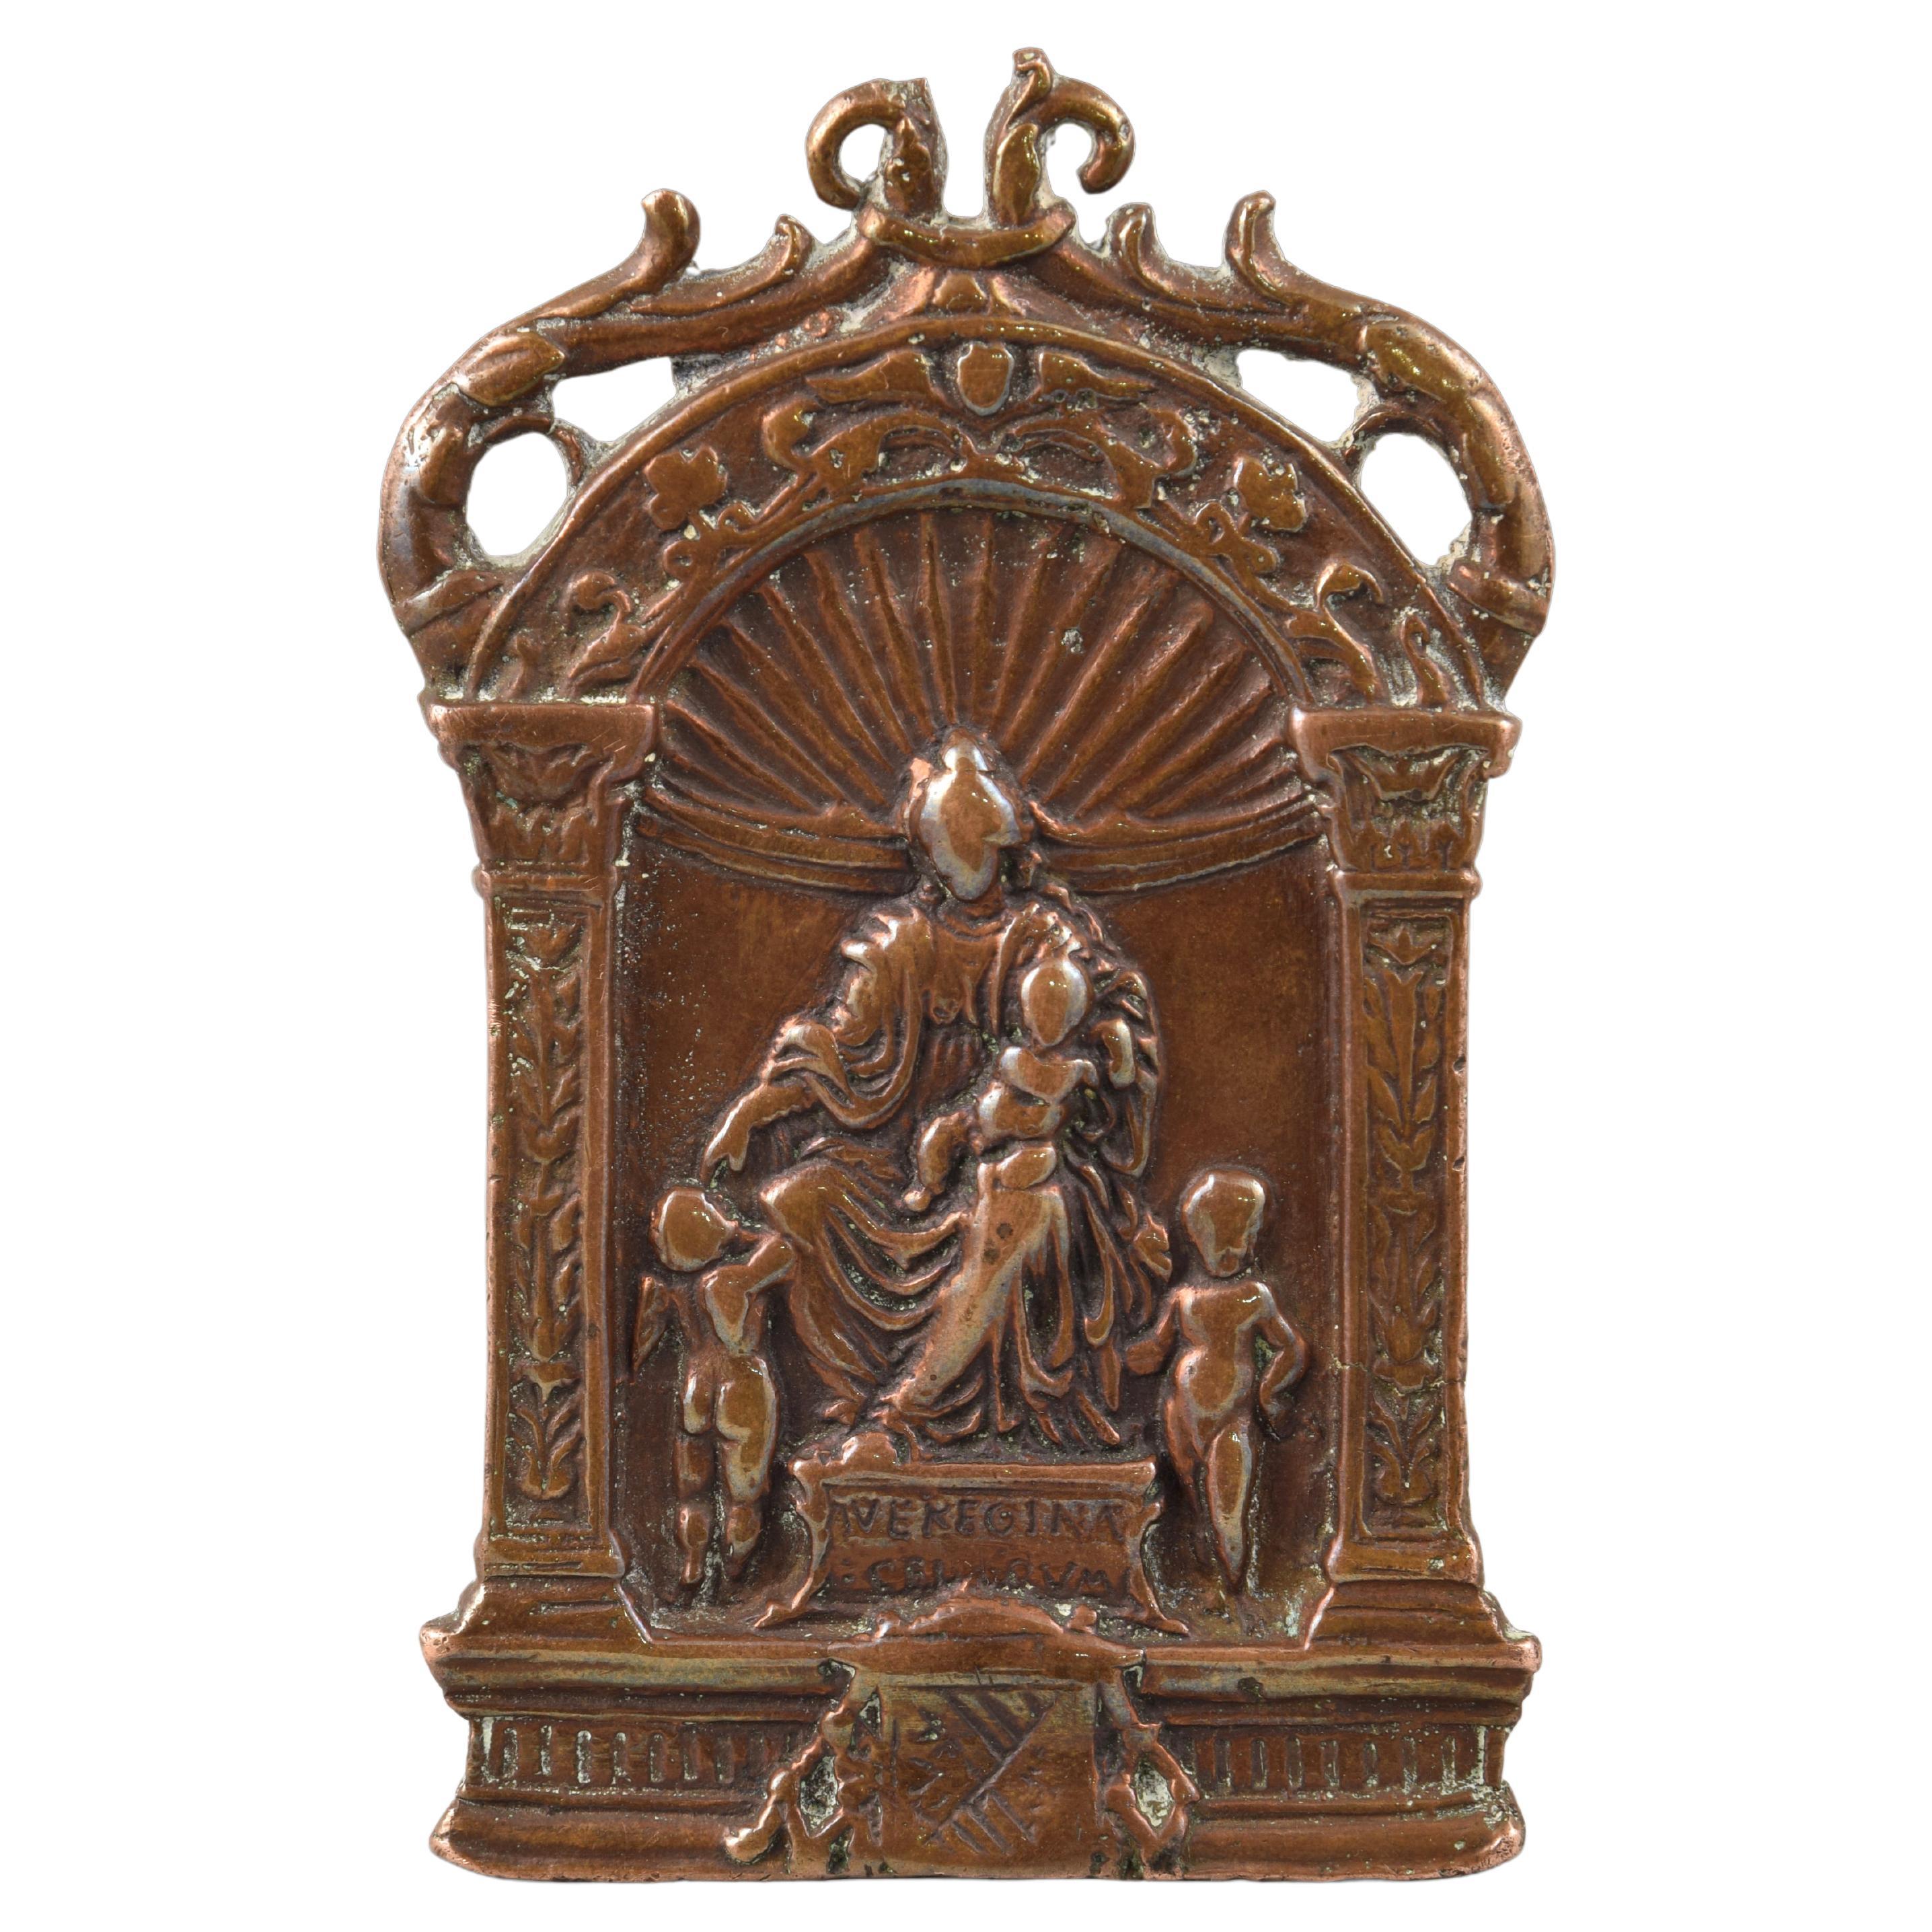 Pax de bronze ou panneau de pax, 16ème siècle